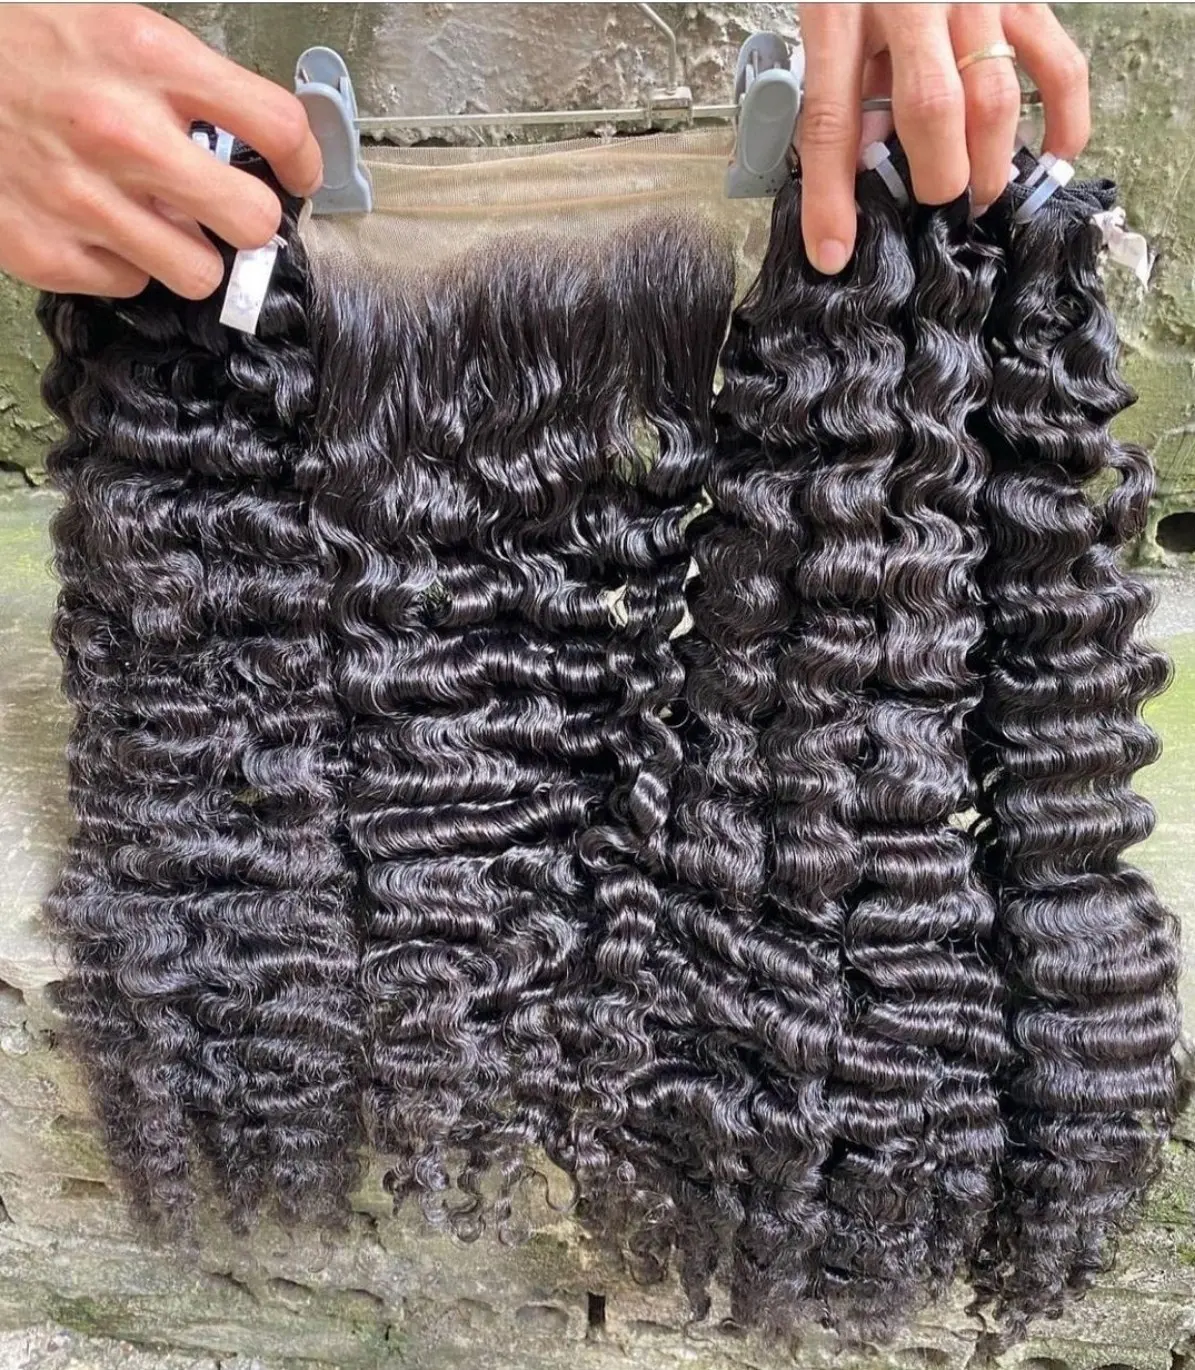 Bestseller Rohes birmanisches lockiges menschliches Haar, Großhandel birmanisches lockiges echtes Nagel haut passt zu natürlichen menschlichen Haar verlängerungen 8-30 Zoll